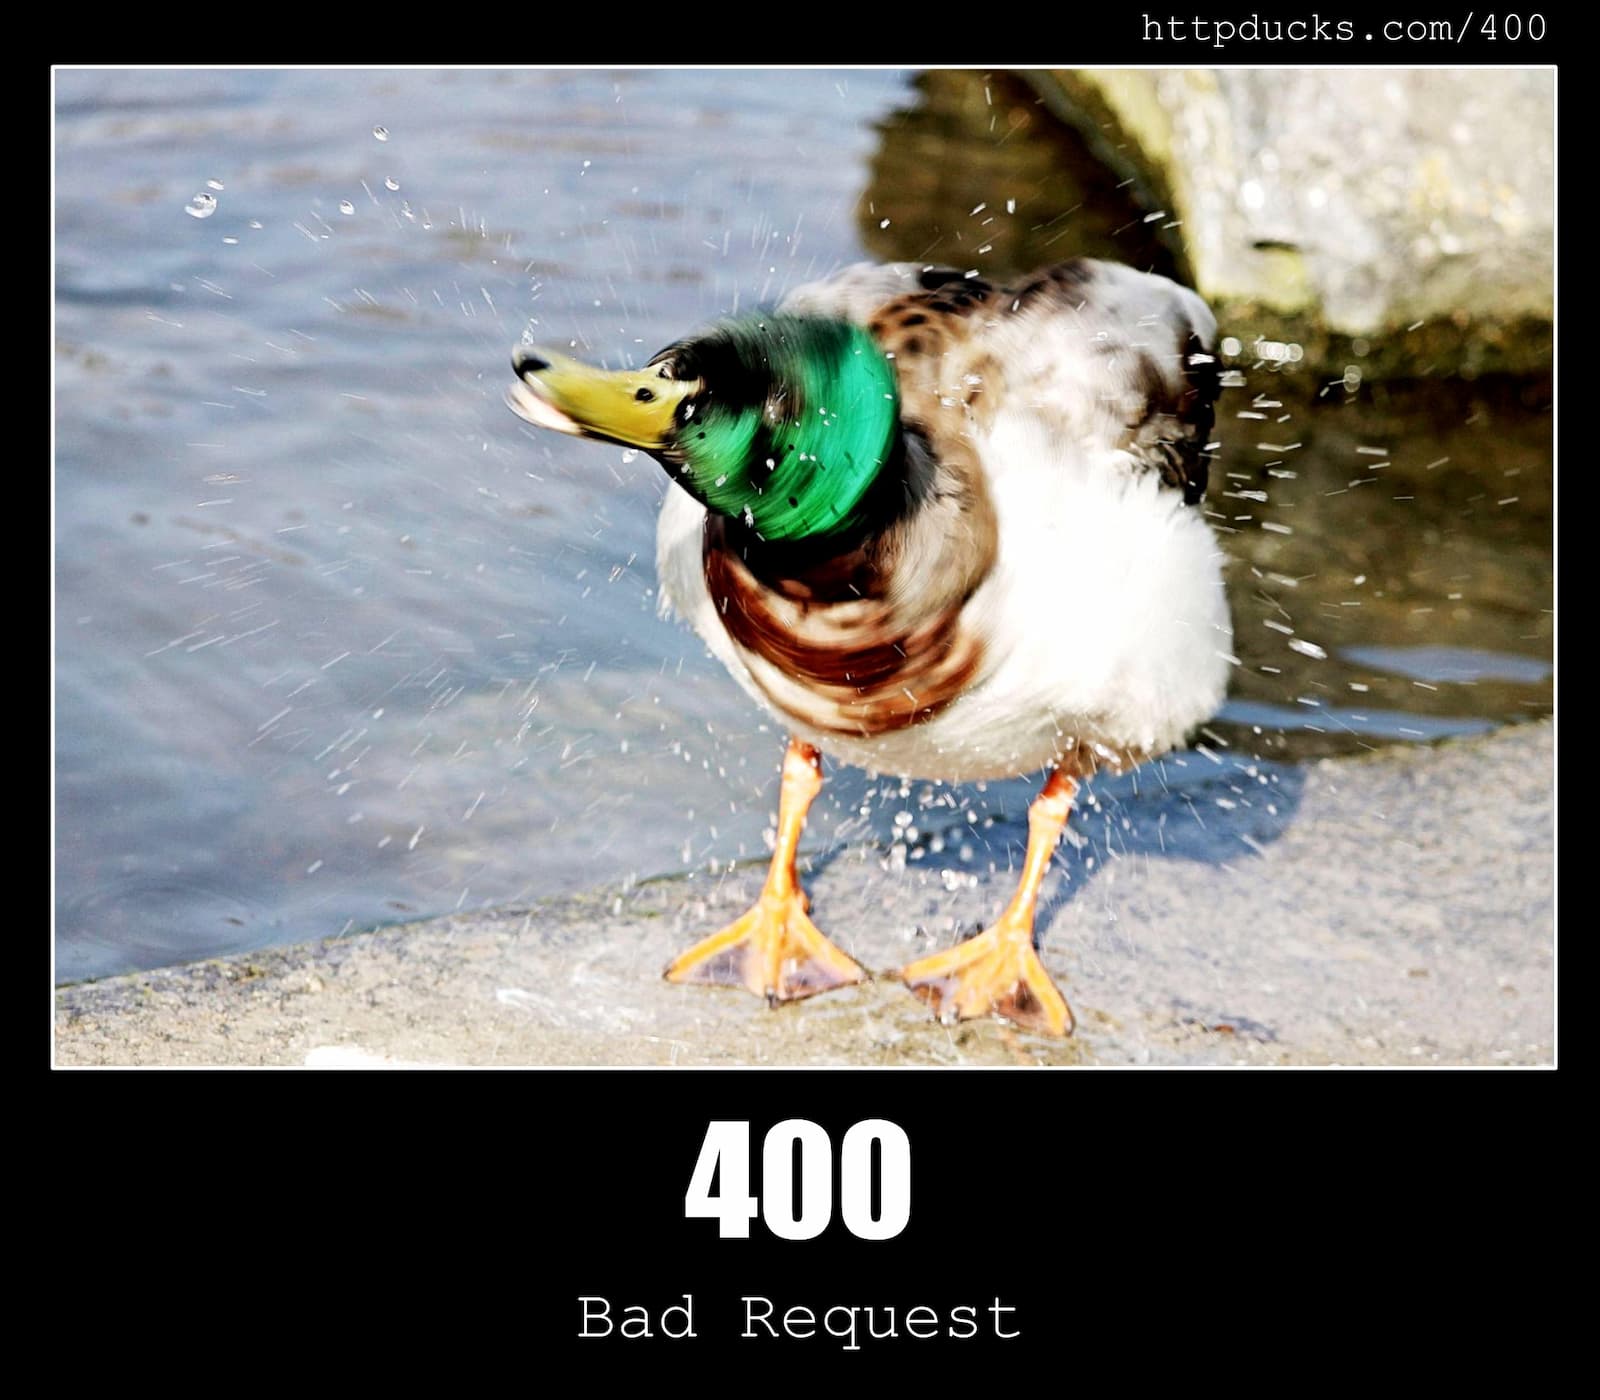 HTTP Status Code 400 Bad Request & Ducks